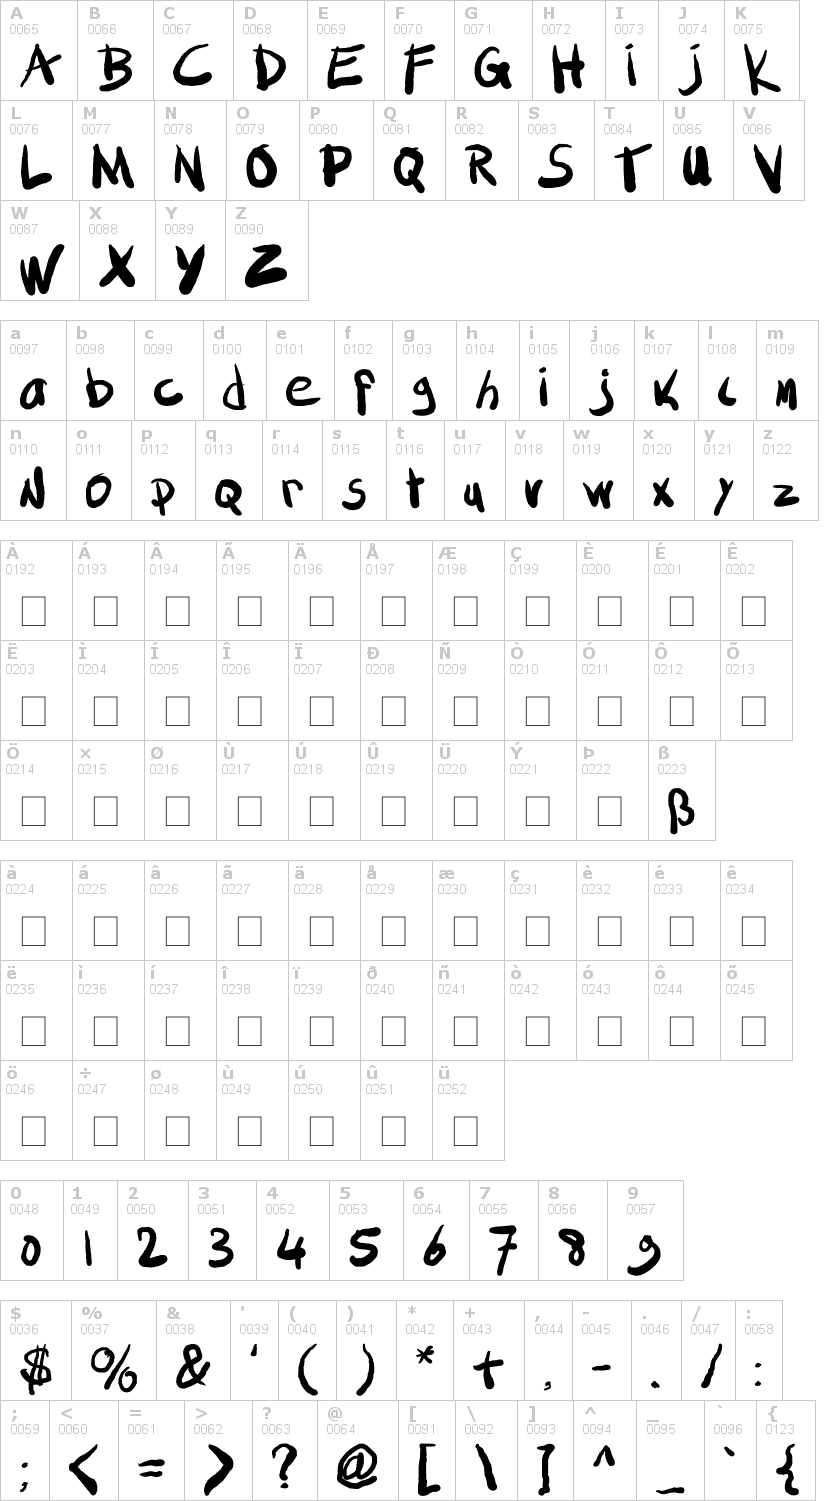 Lettere dell'alfabeto del font sml-fat-marker con le quali è possibile realizzare adesivi prespaziati